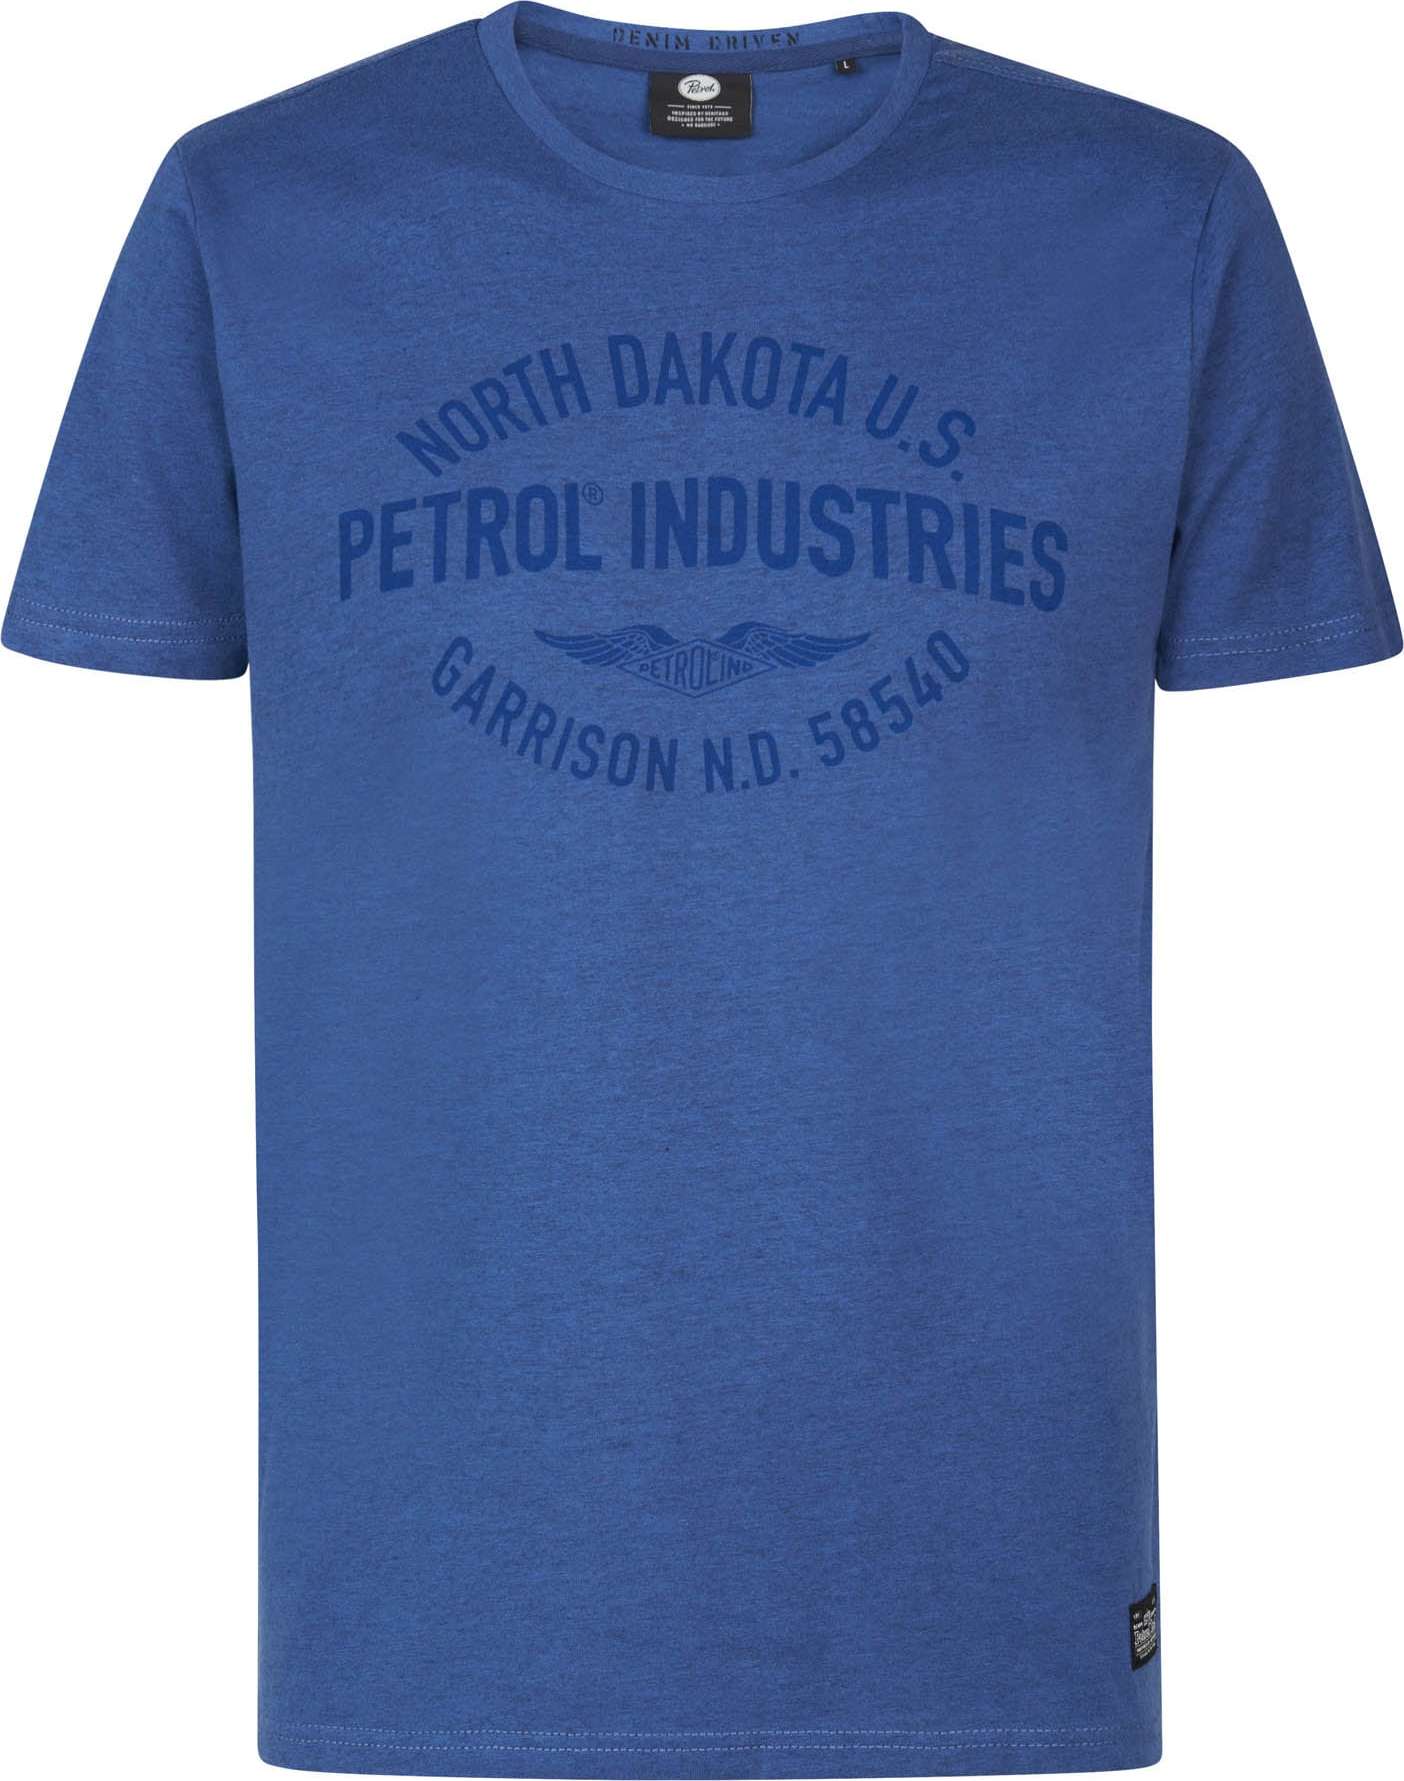 Tričko Petrol Industries modrá / modrý melír